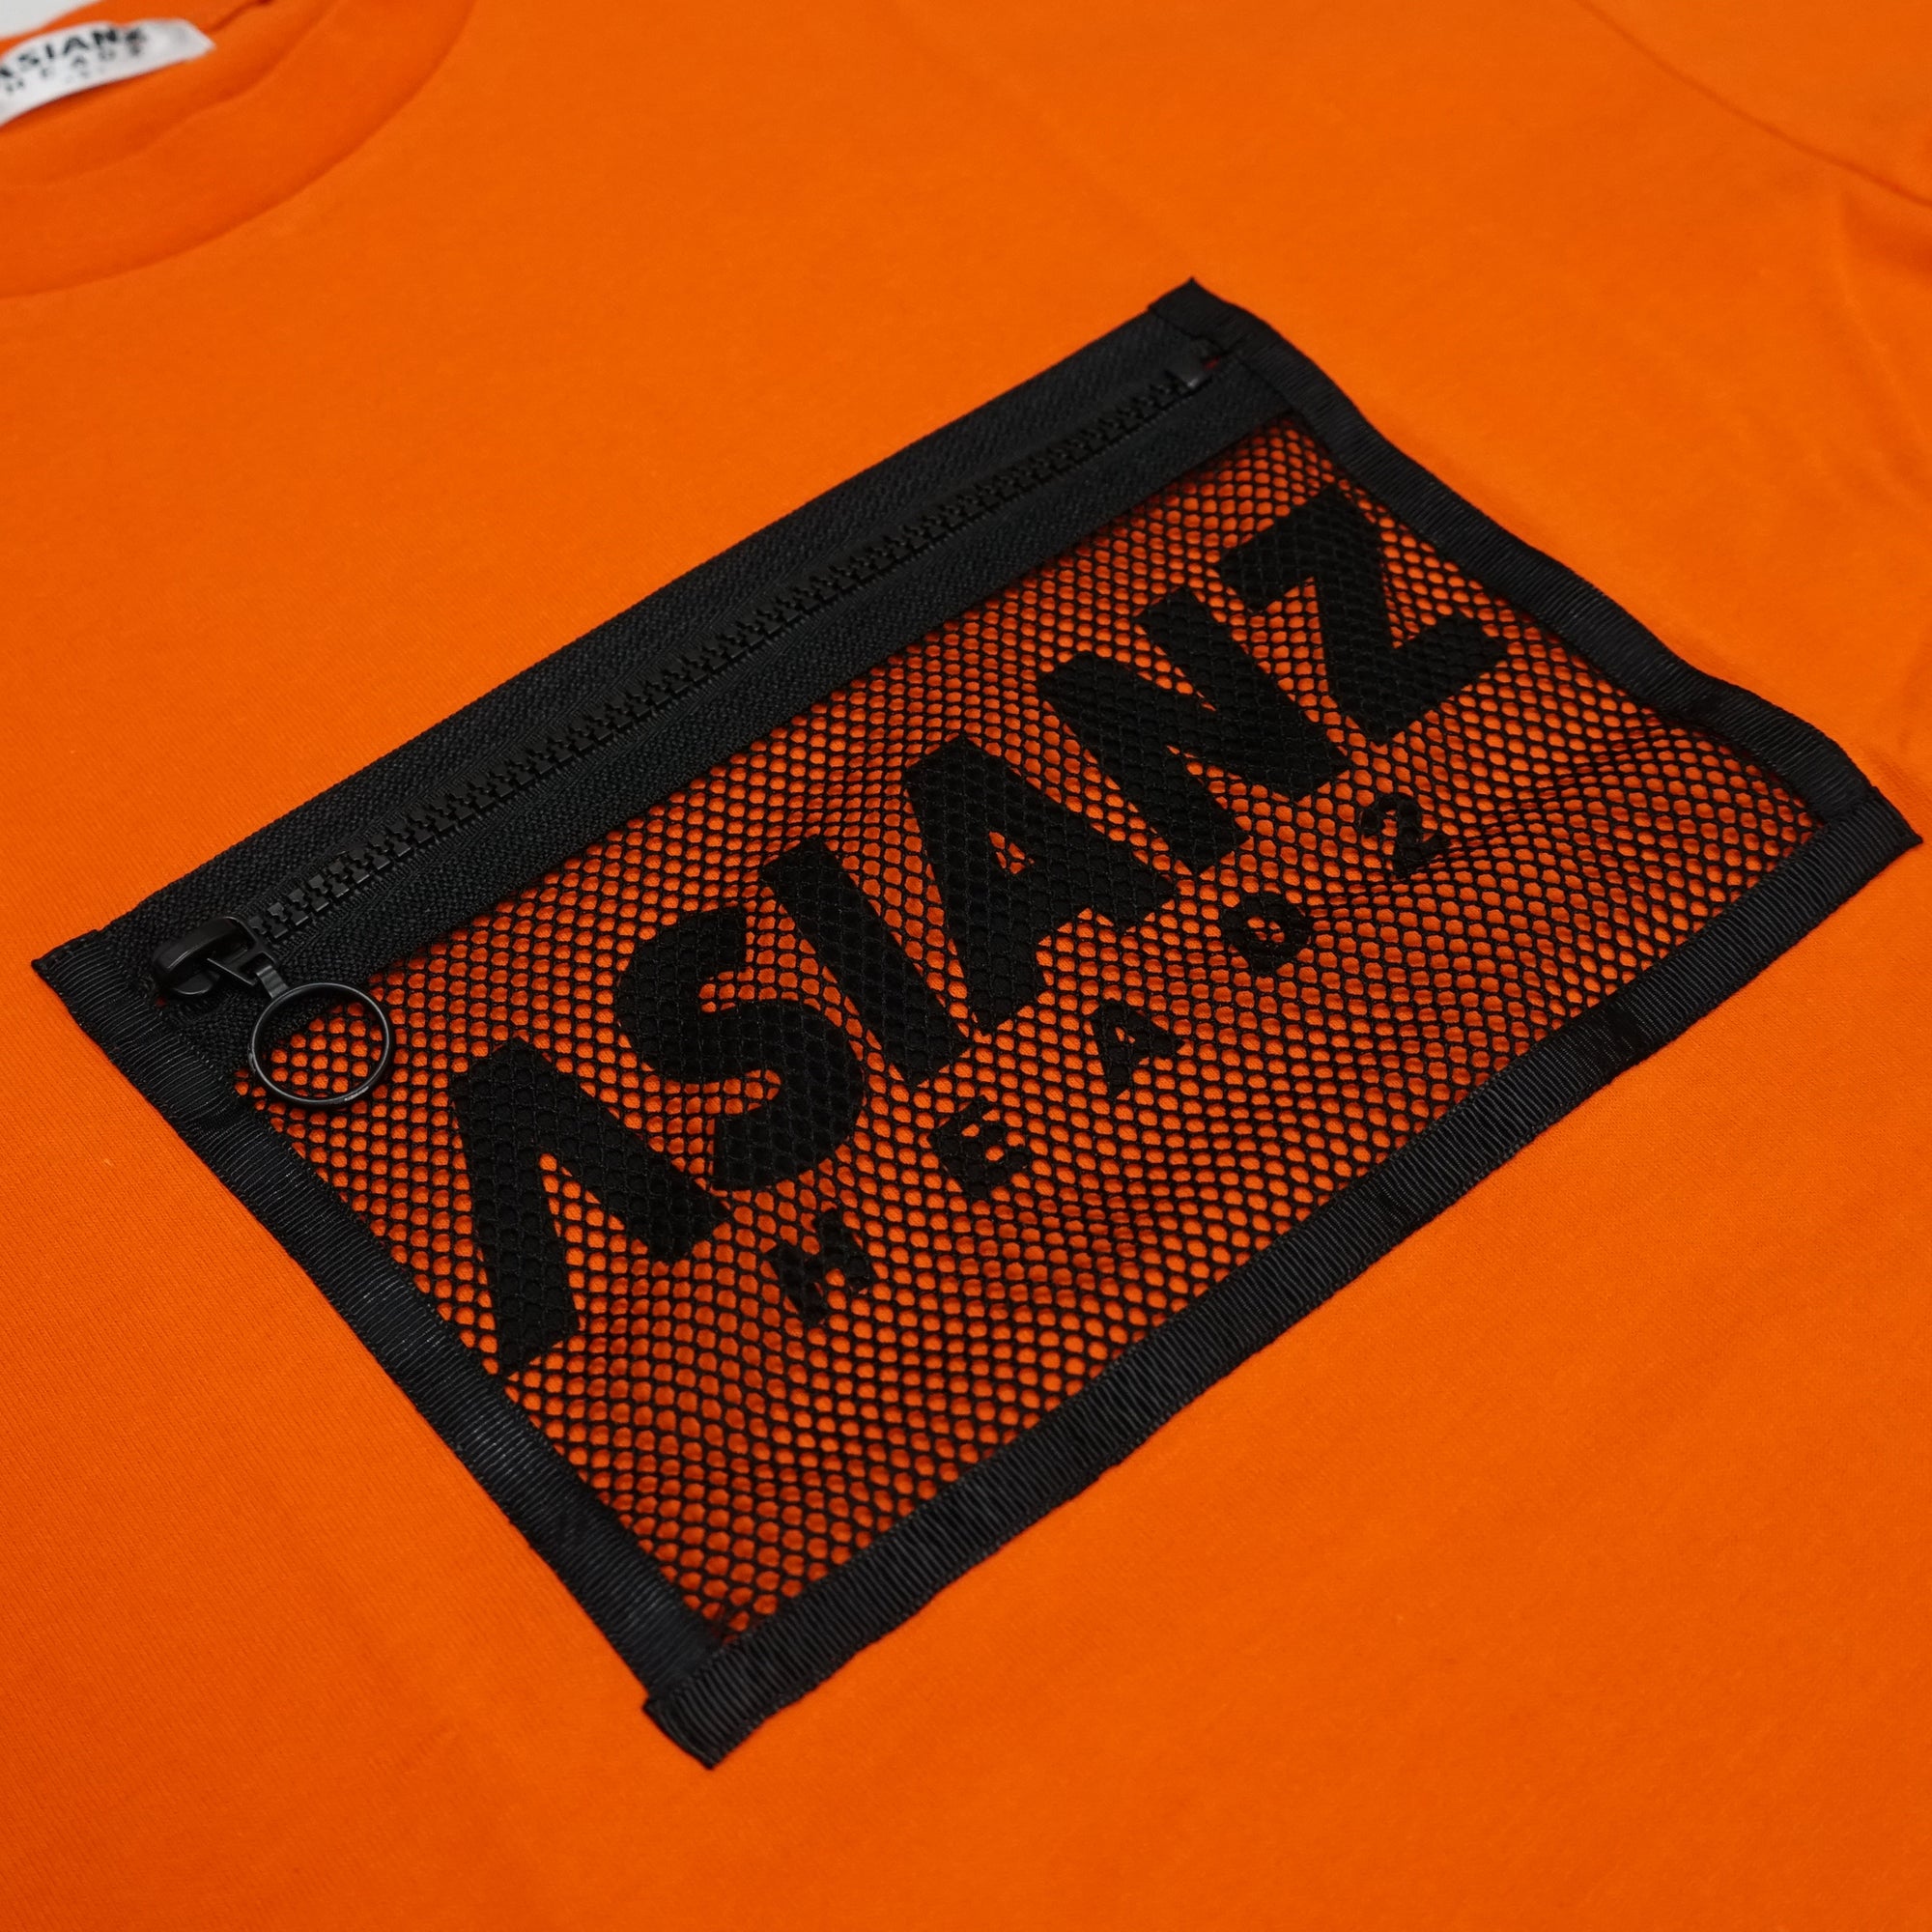 (40%オフ! セール商品)  ASIANZ HEAD2 メッシュポケット Tシャツ